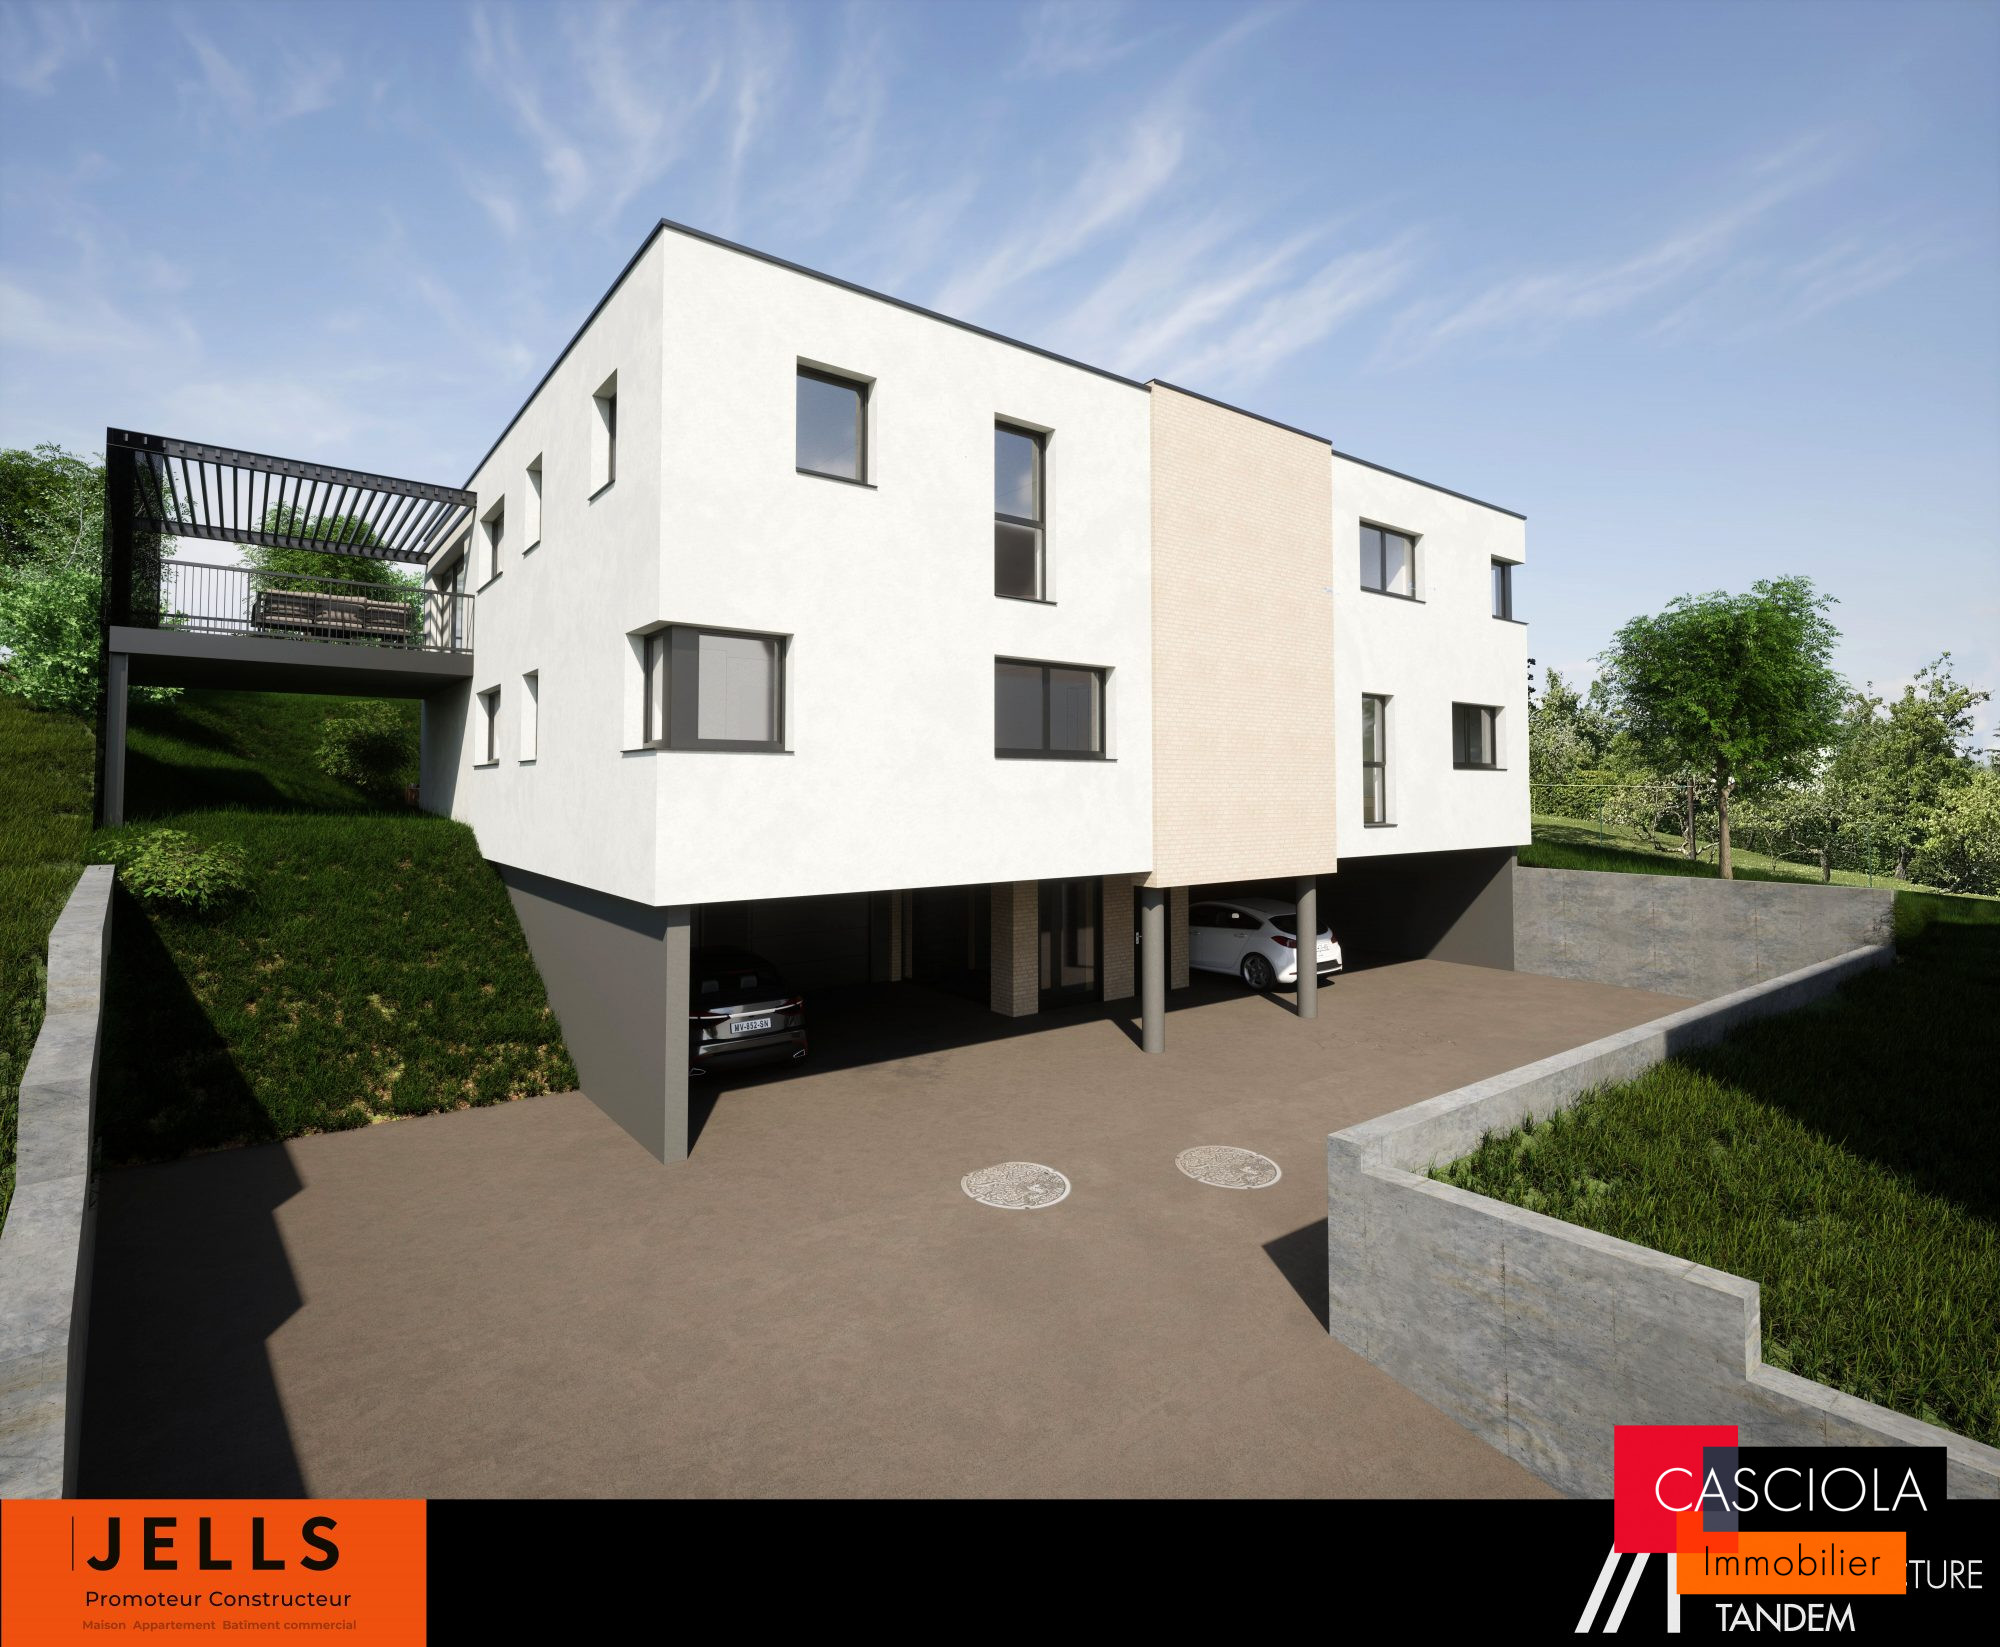 Vente Appartement 98m² 5 Pièces à Longeville-lès-Metz (57050) - Casciola Immobilier